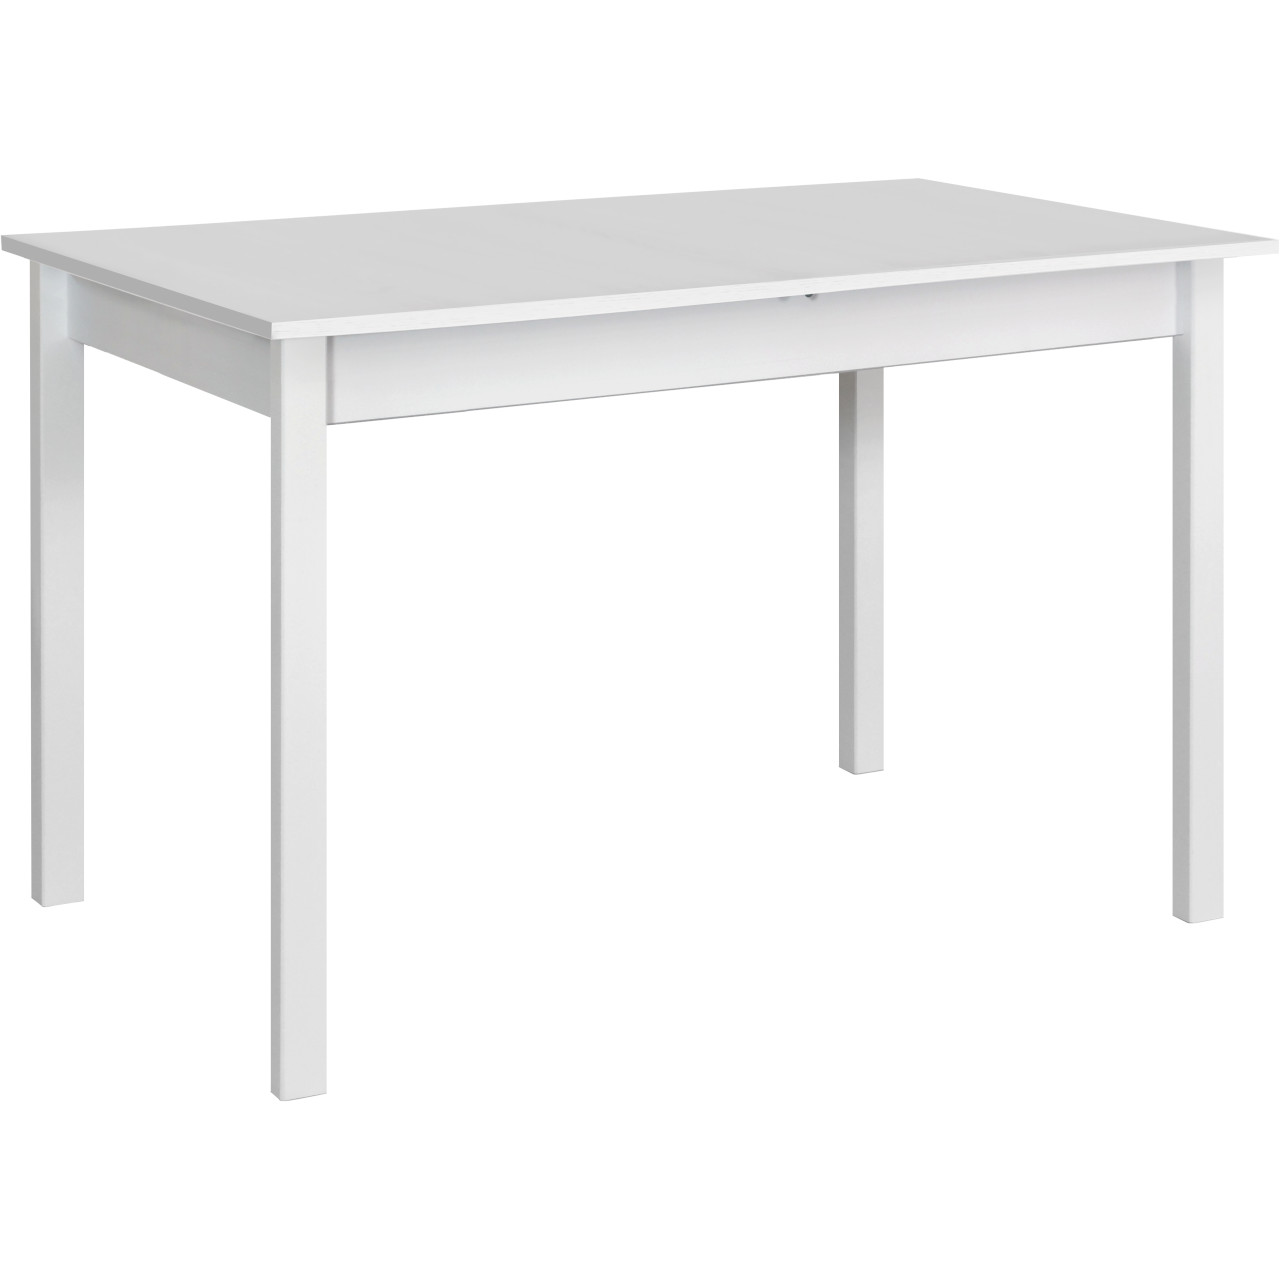 Tisch MAX 2 60x110 weiß laminat